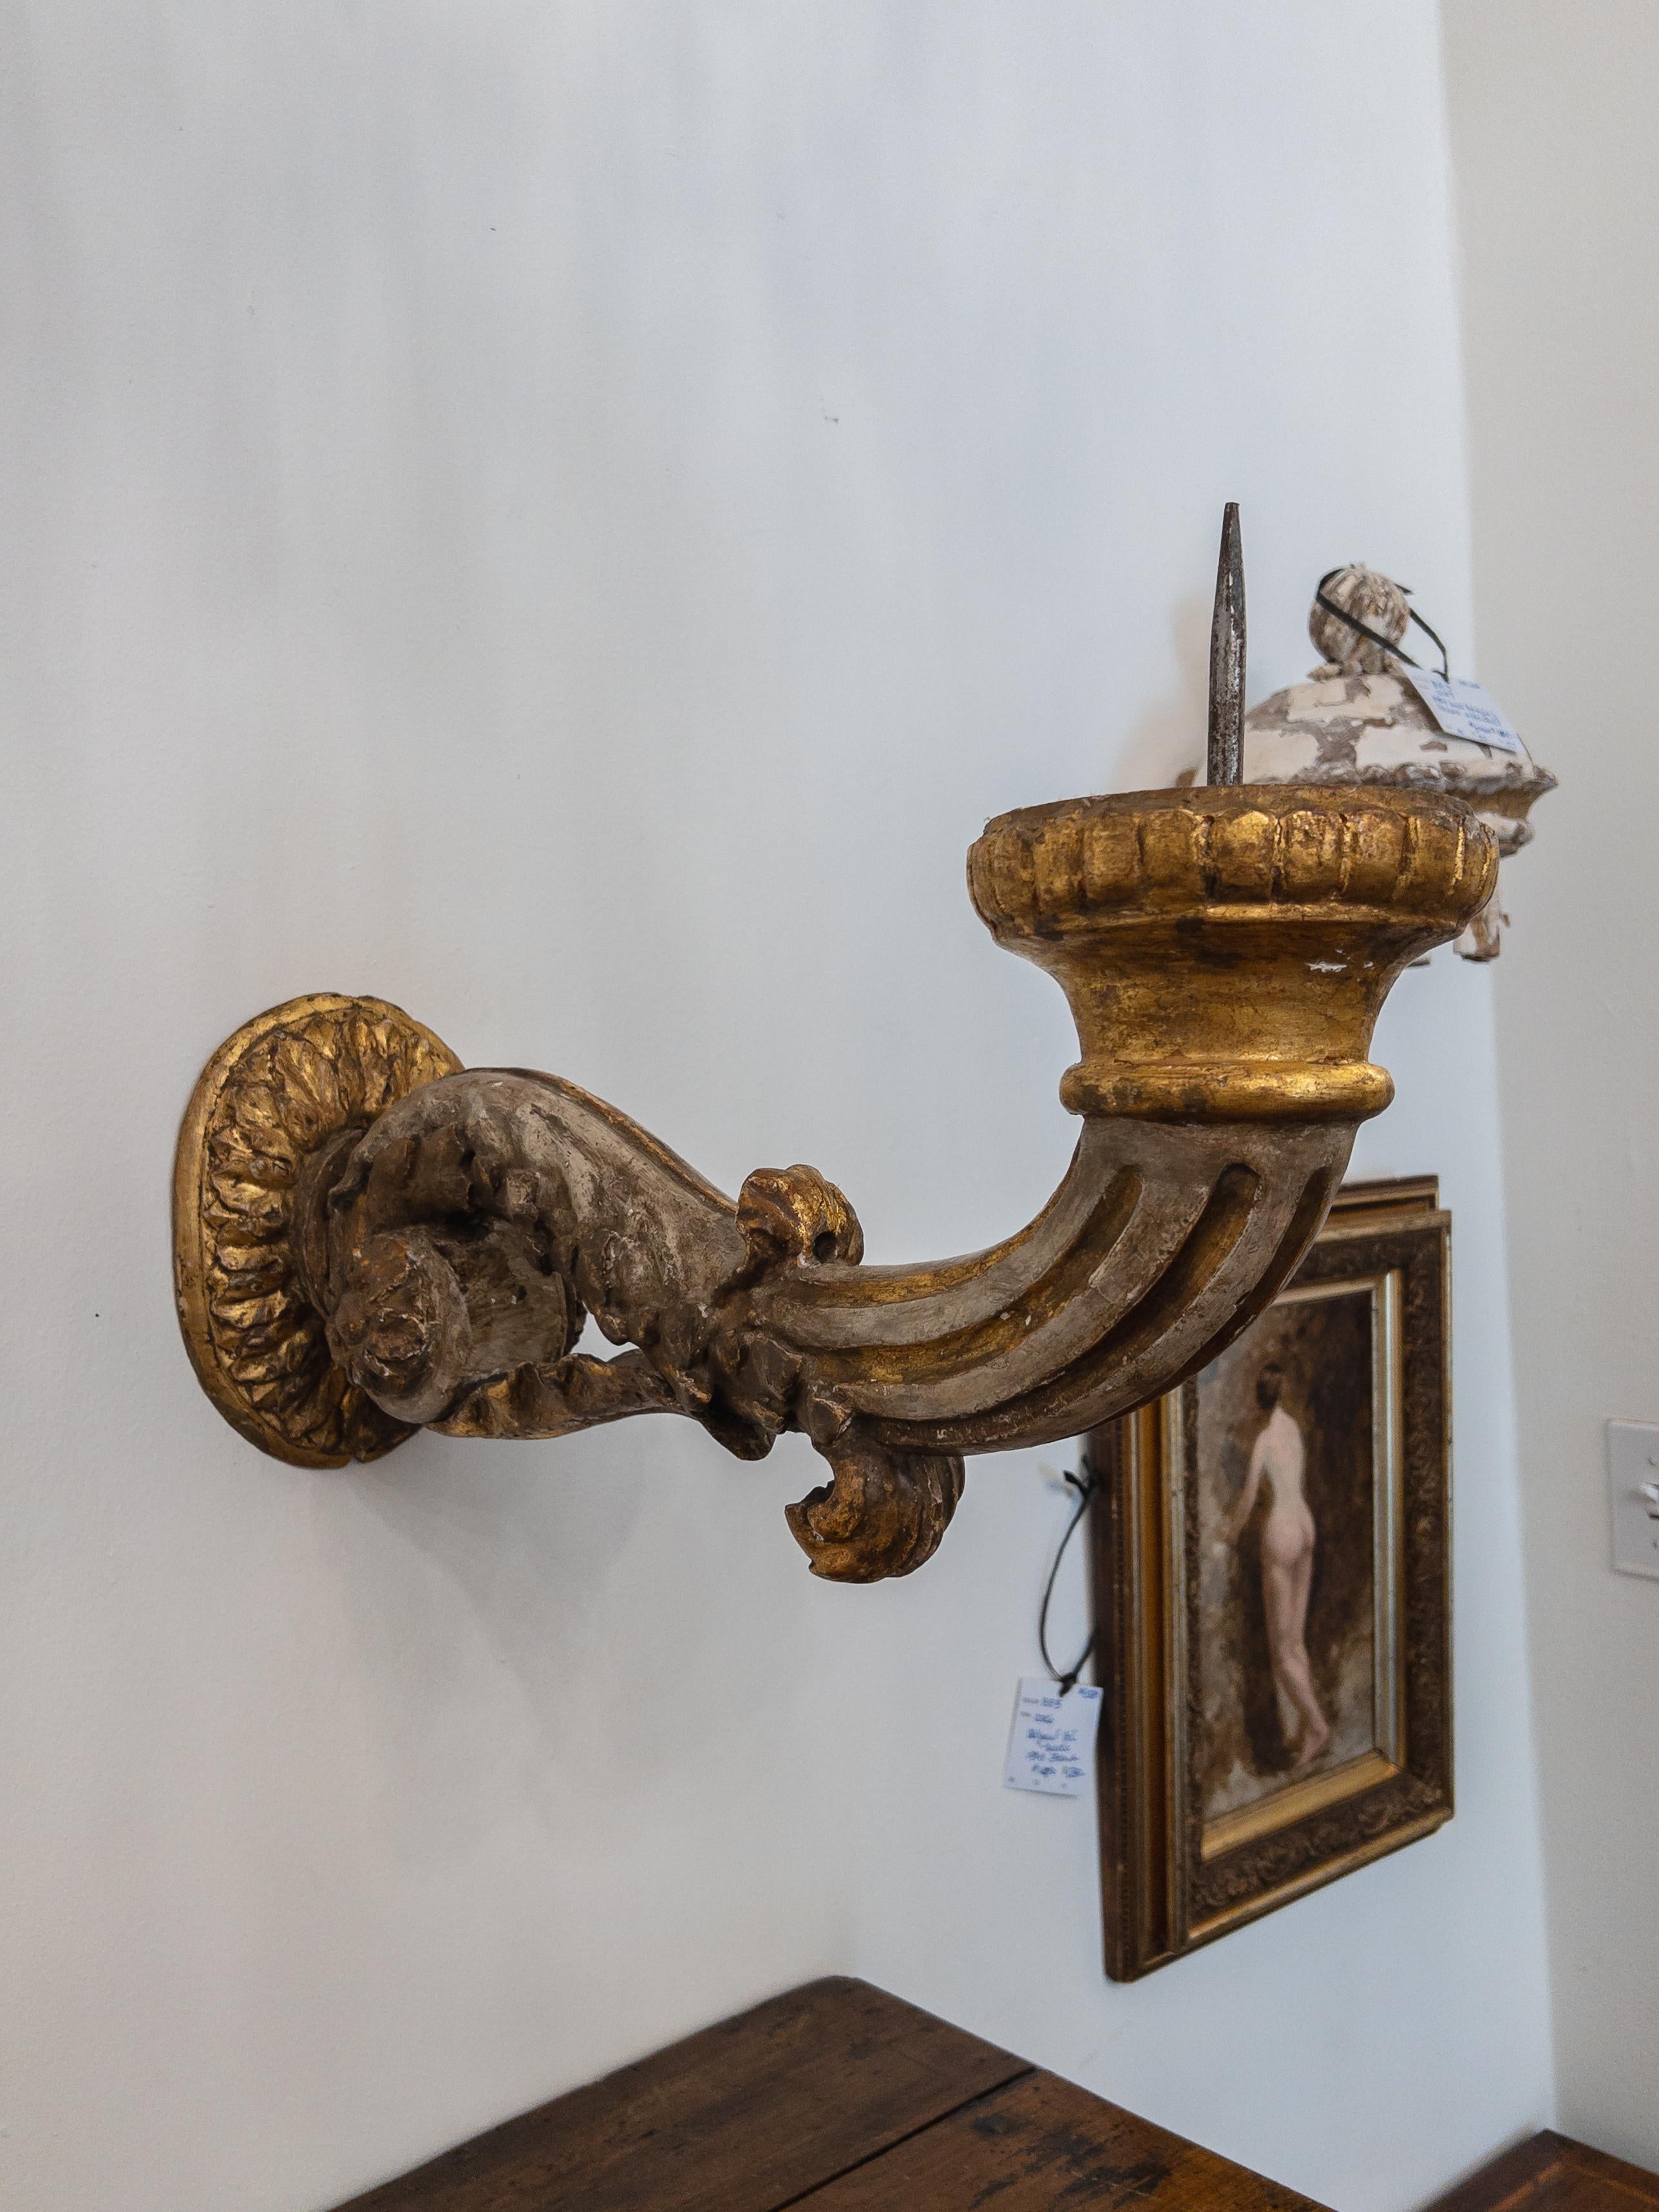 Une paire d'appliques italiennes du XIXe siècle en bois sculpté sont des chandeliers muraux exquis et antiques. Ces appliques sont fabriquées en bois et leur design présente des sculptures complexes qui témoignent du talent artistique de l'artisanat